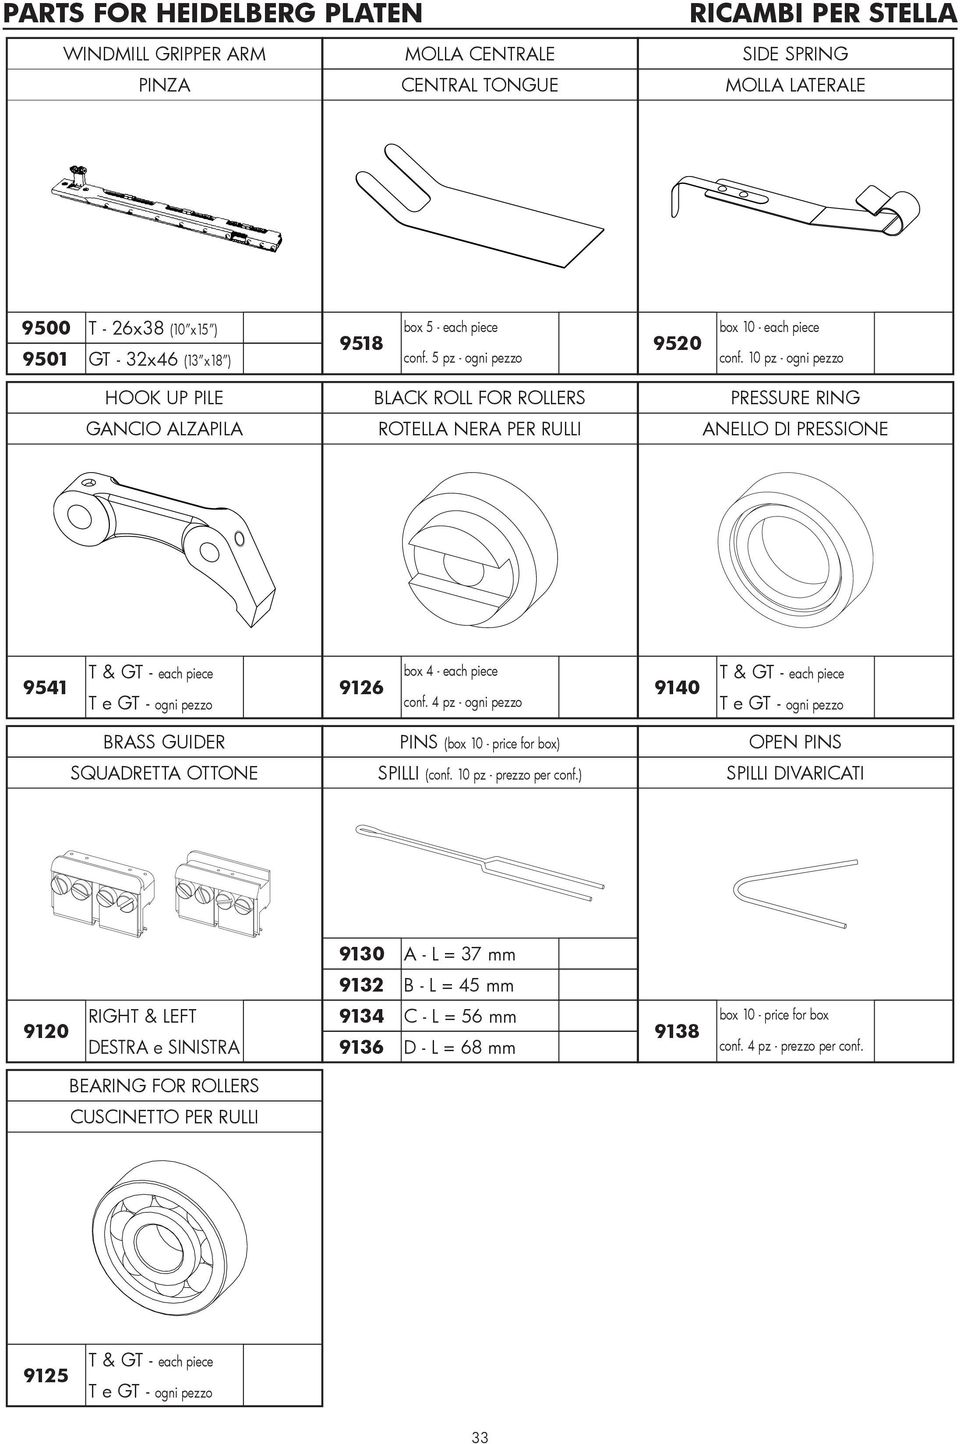 4 pz - 9140 T & GT - T e GT - BRASS GUIDER SQUADRETTA OTTONE PINS (box 10 - price for box) SPILLI (conf. 10 pz - prezzo per conf.